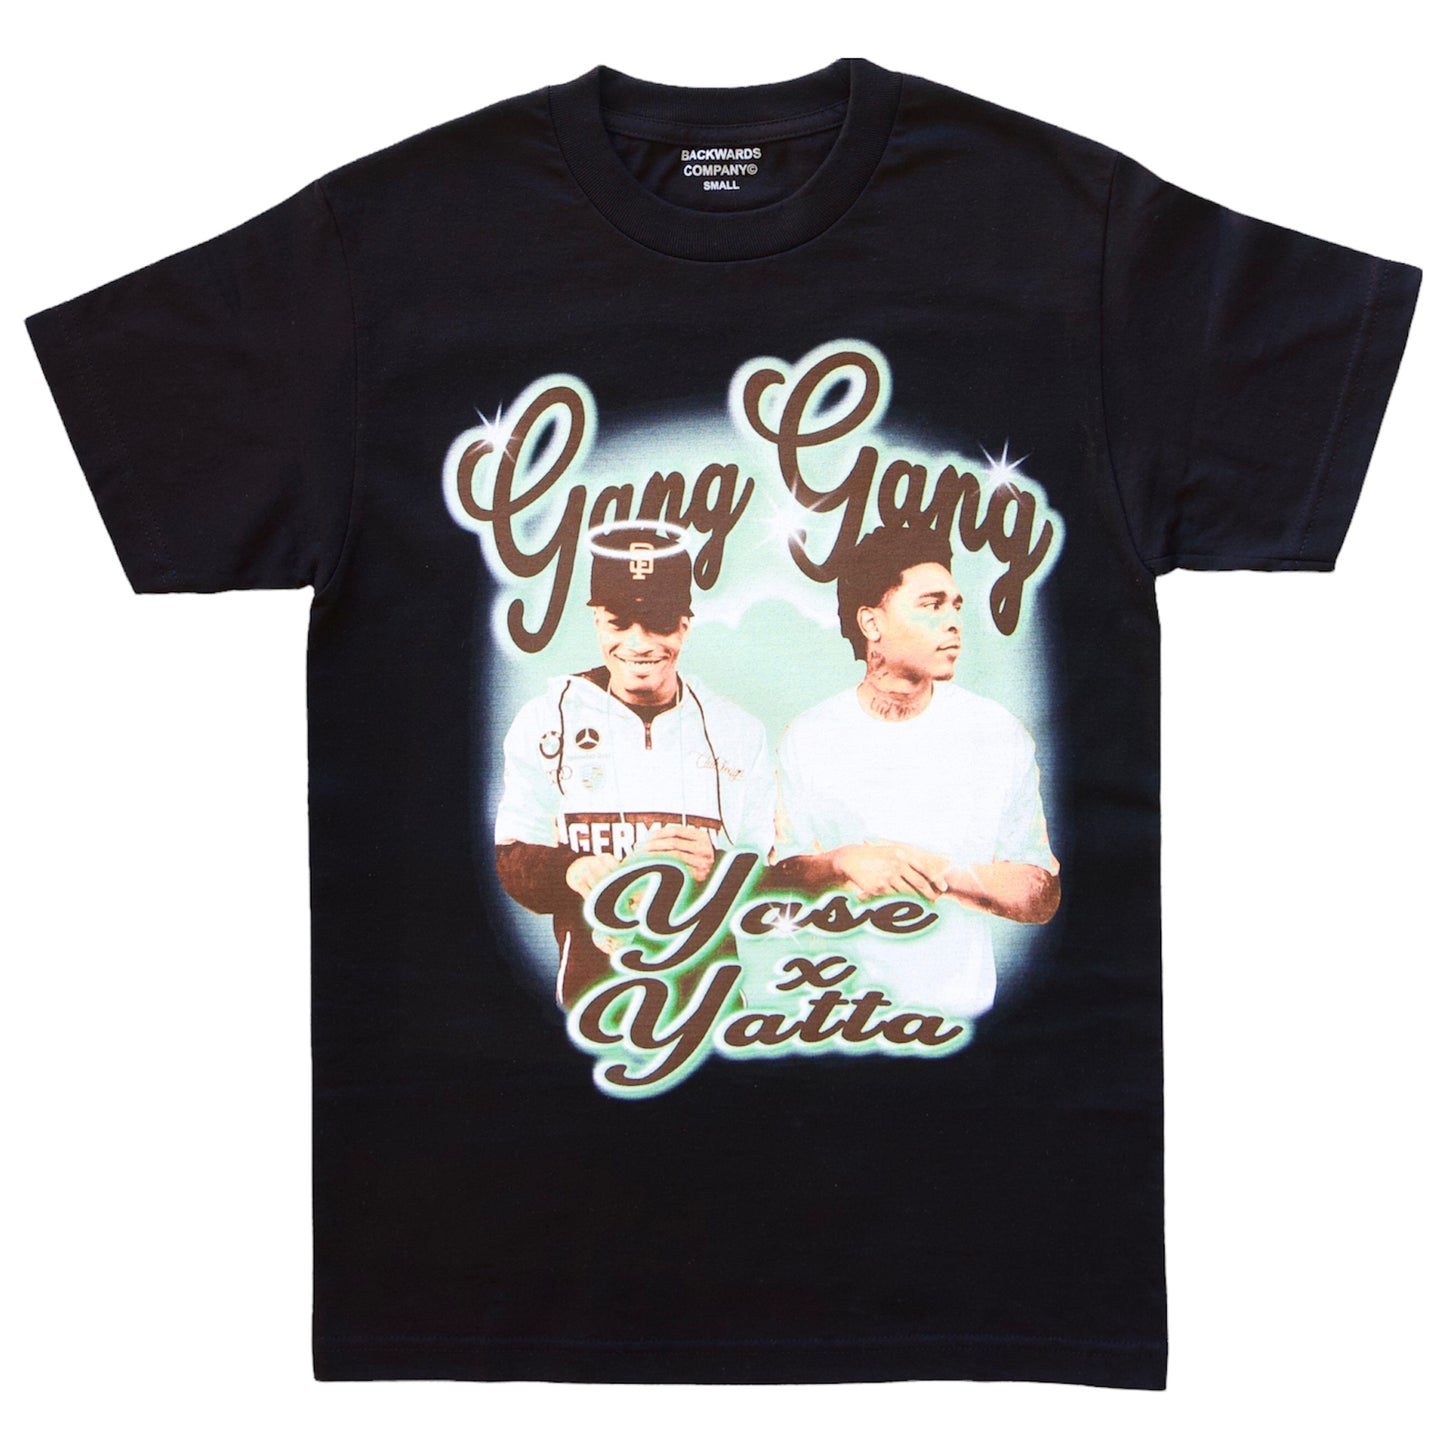 Black “Gang Gang” T-Shirt